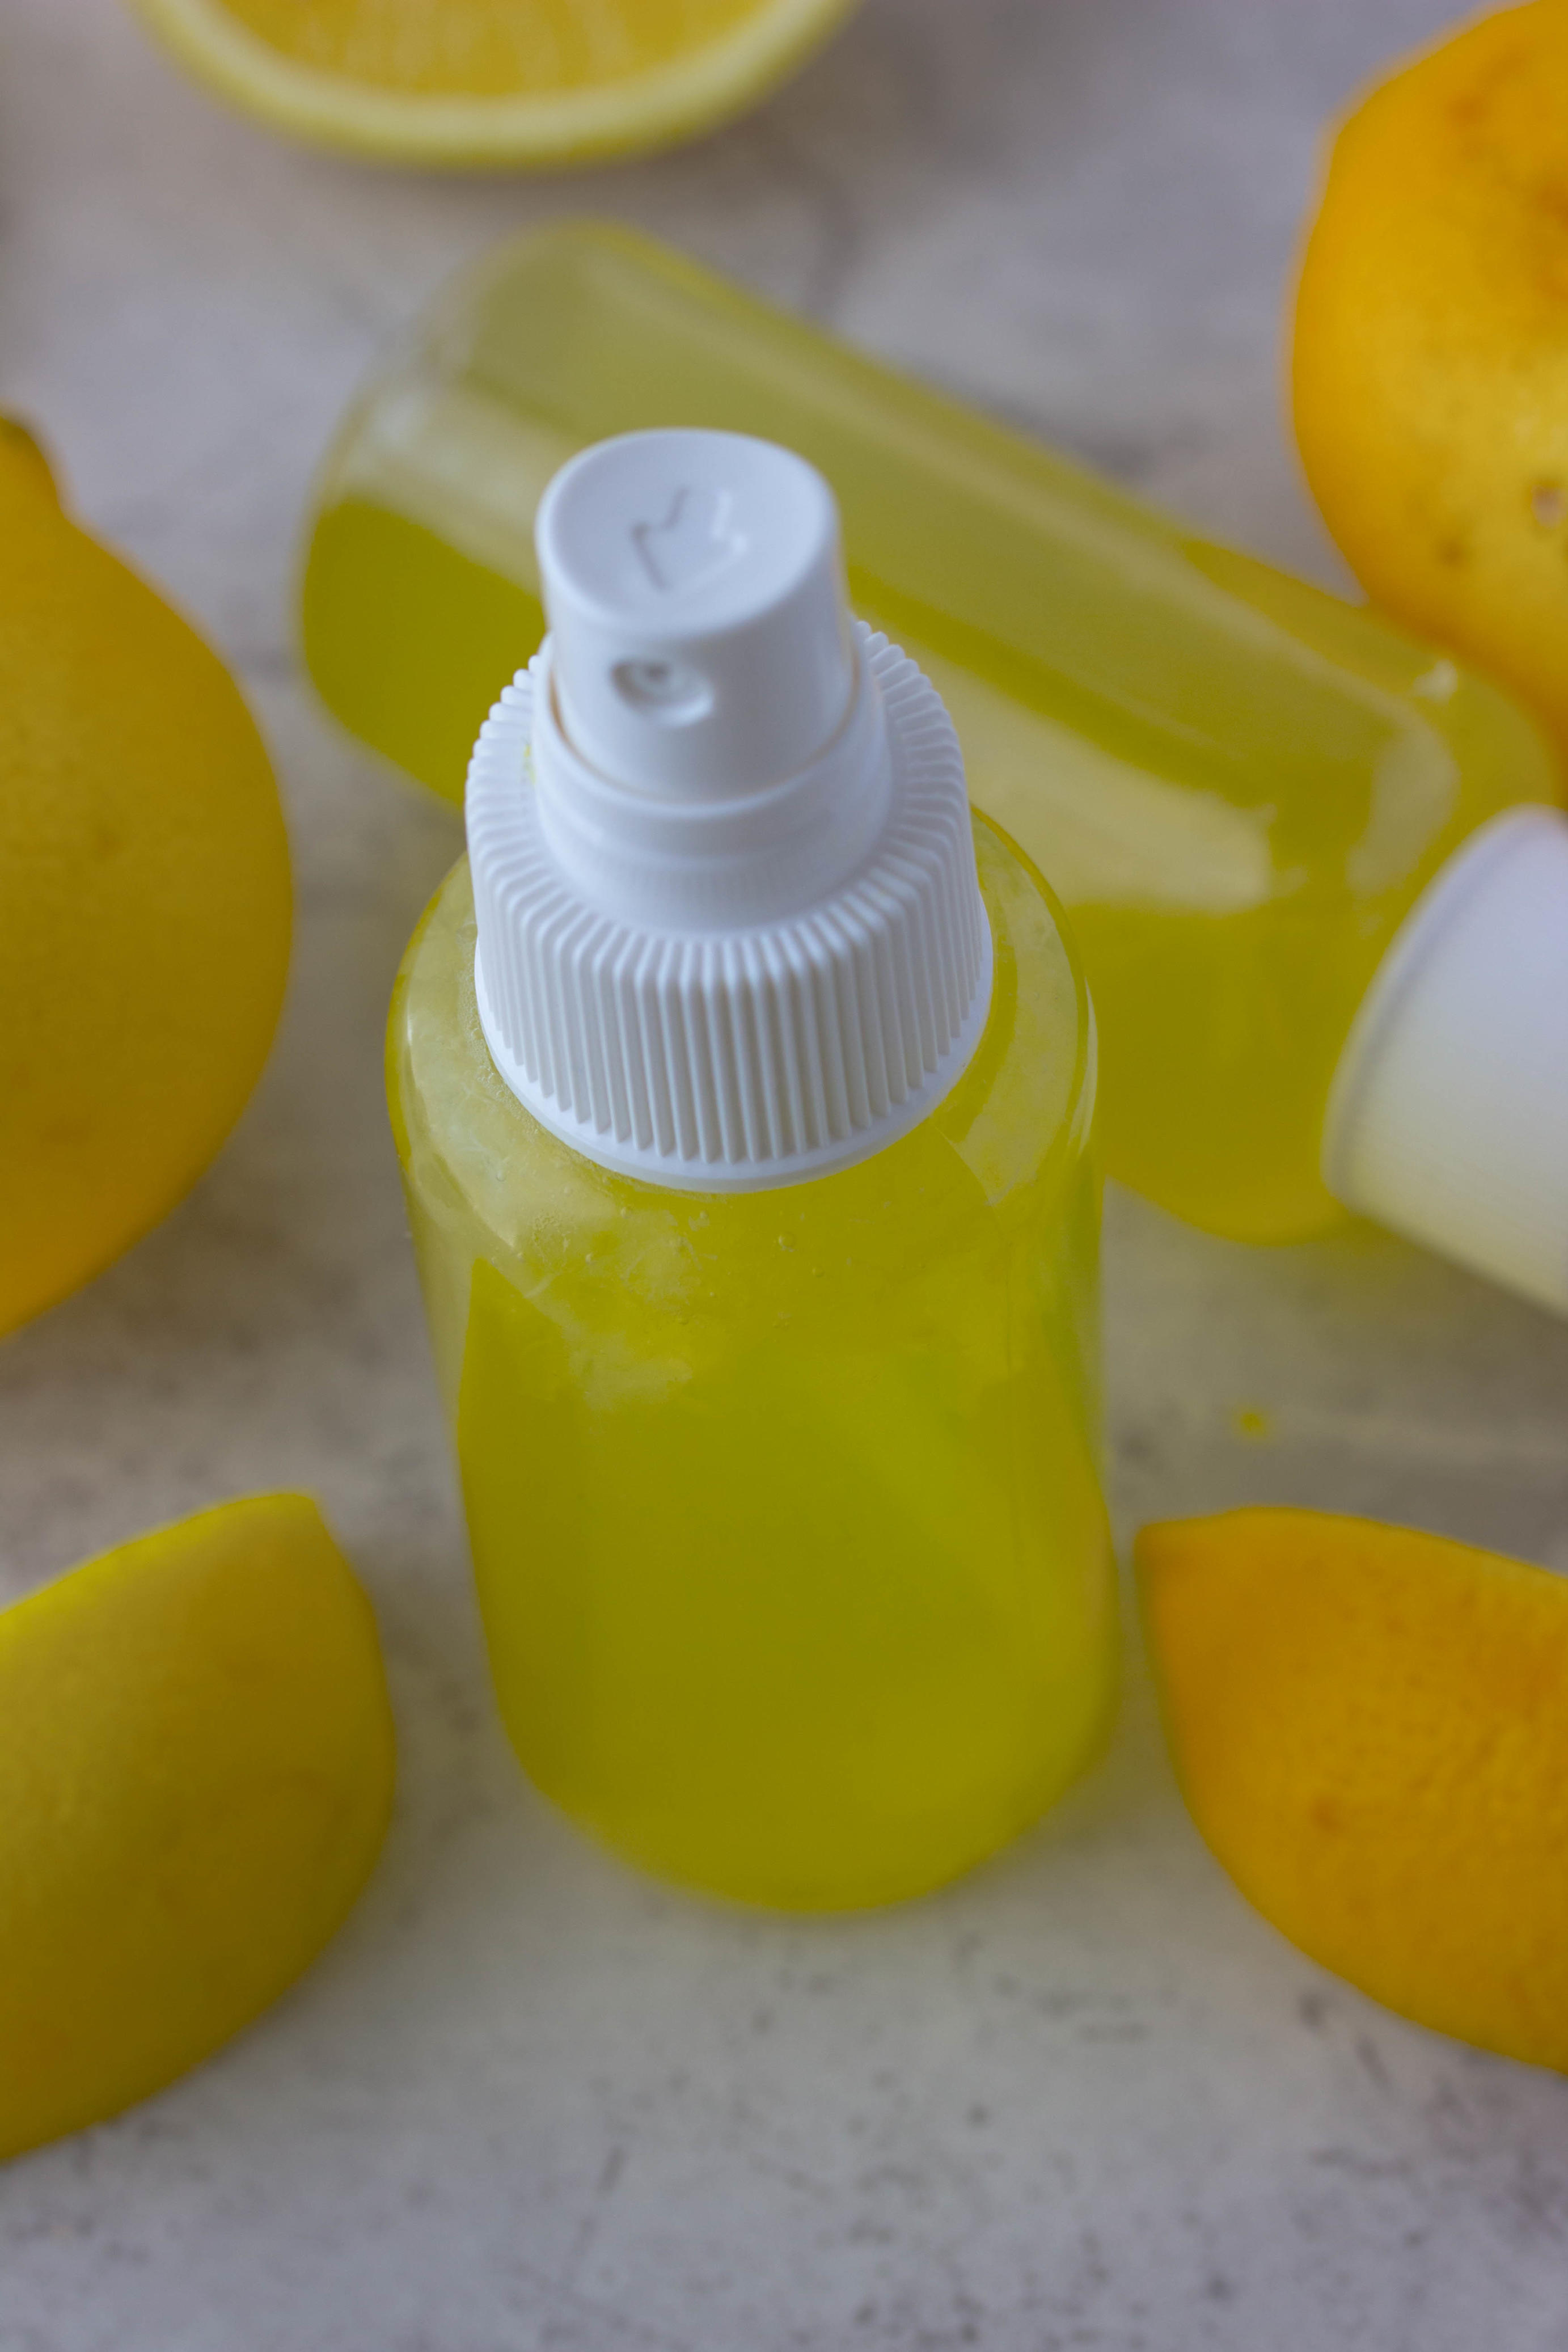 7 таких способов использовать лимон, о которых должна знать каждая женщина